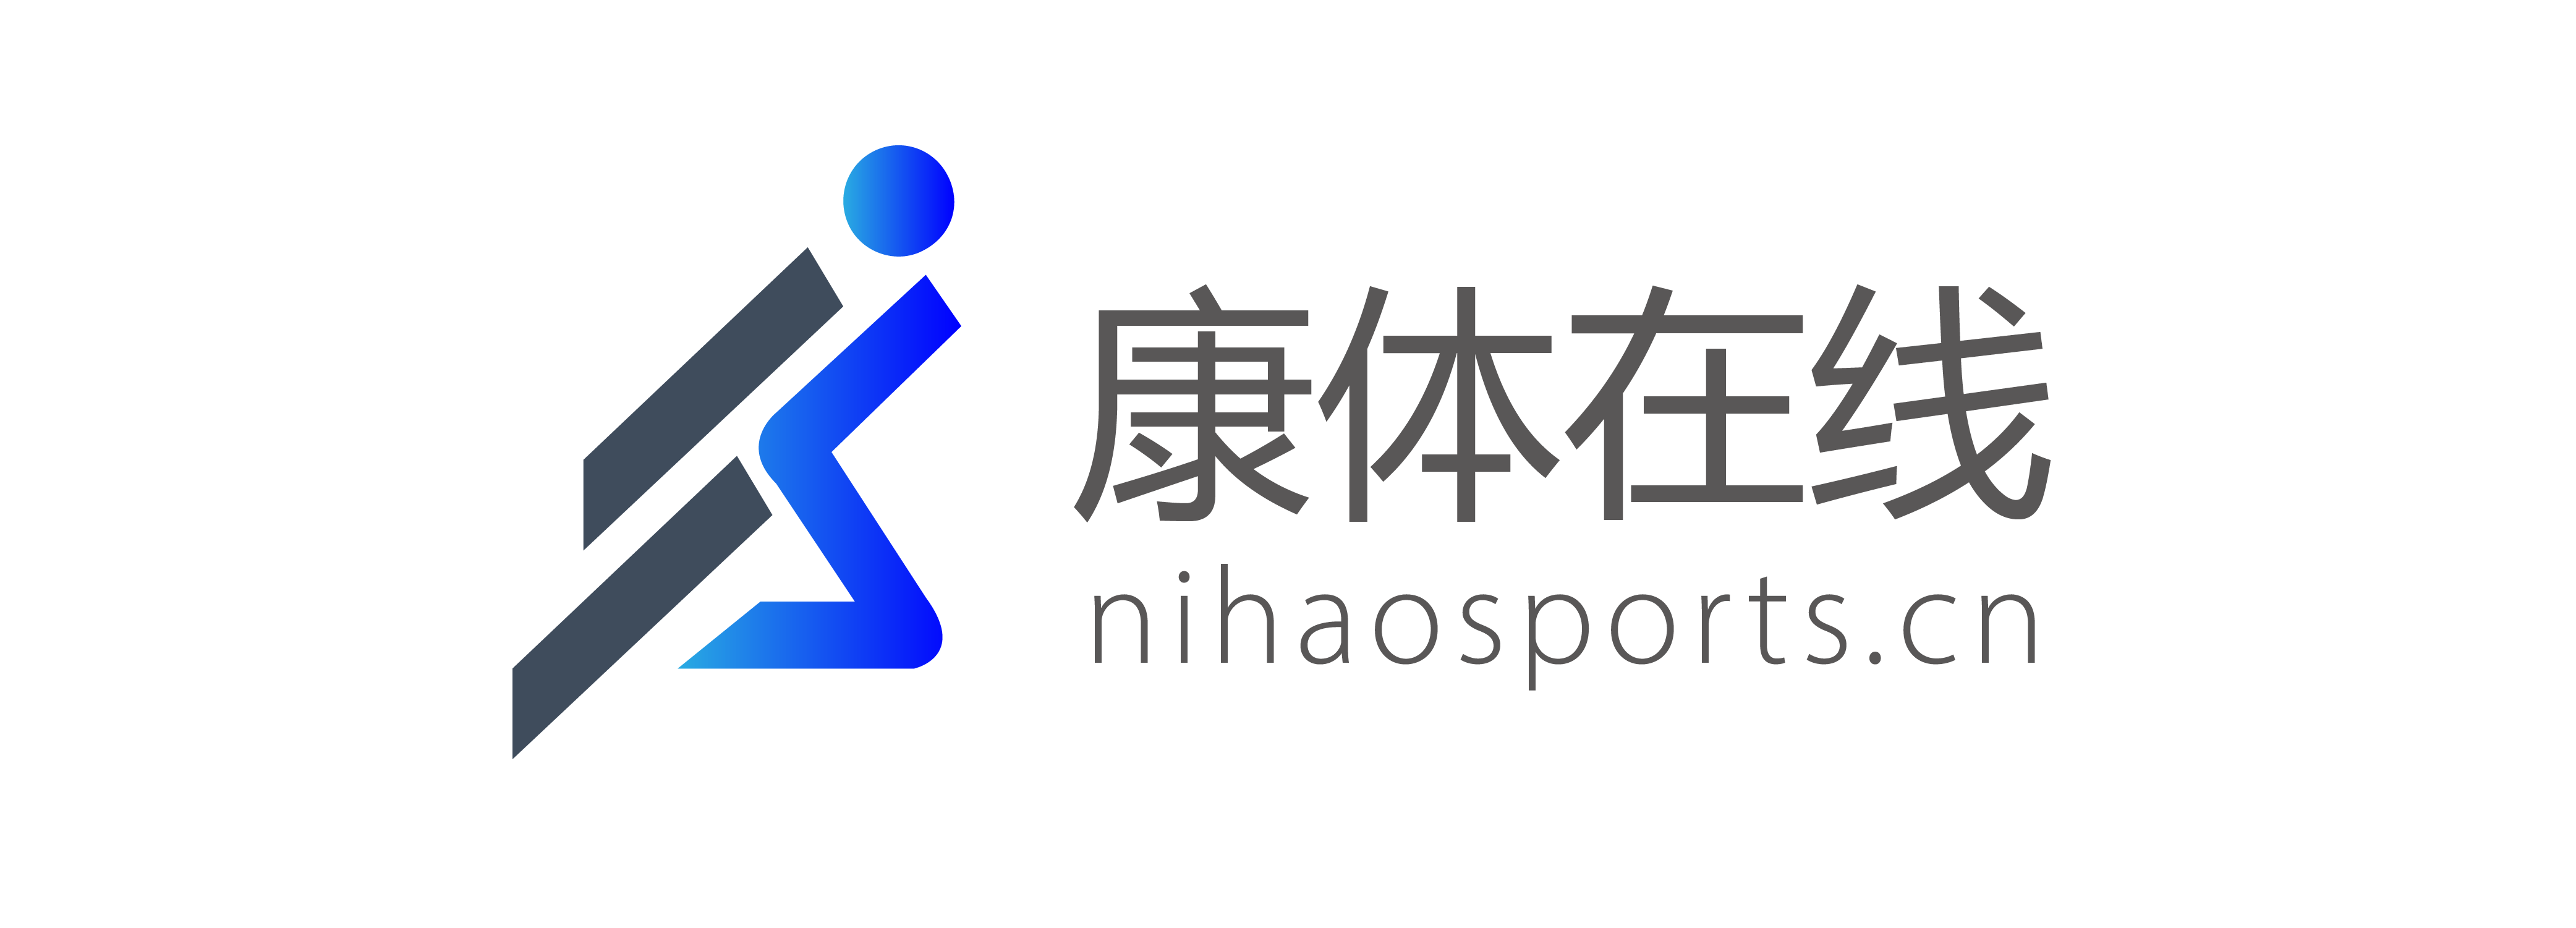 รูปแบบโรงงาน B2B—Nihaosports